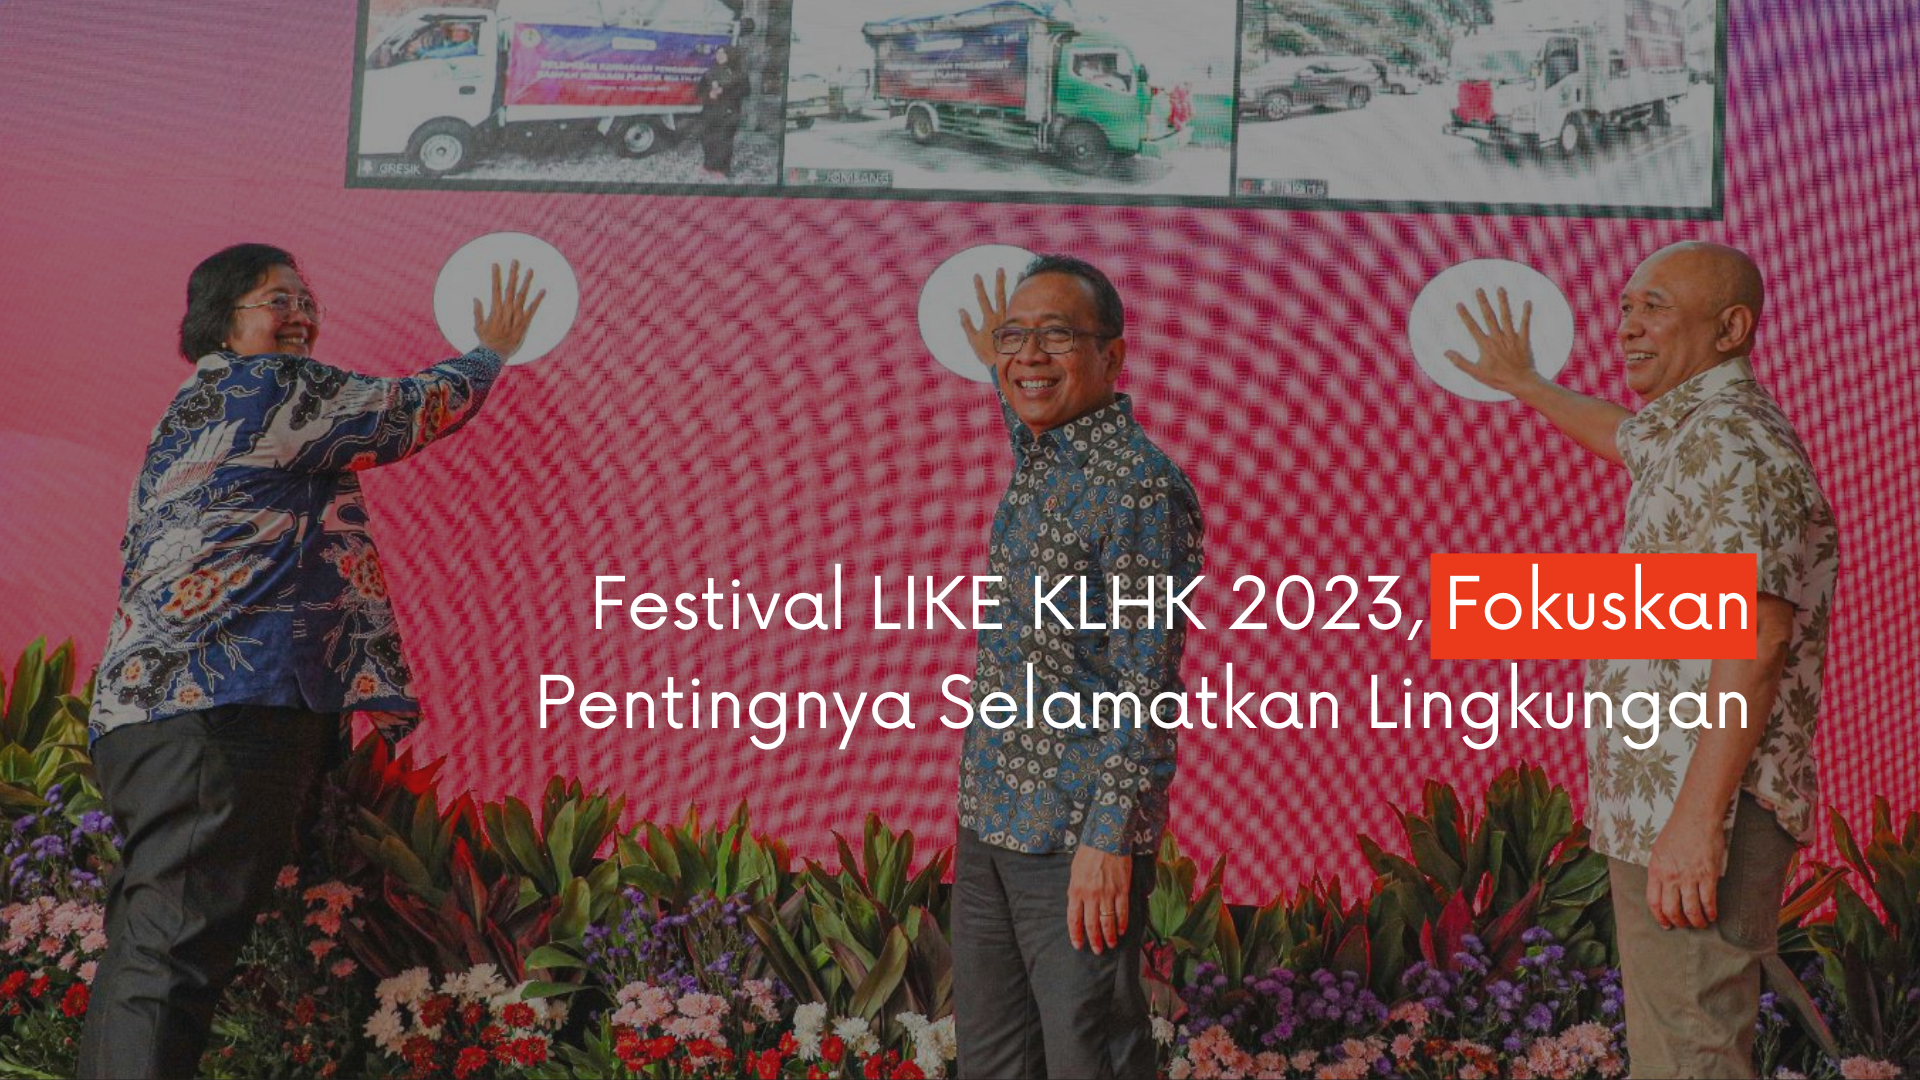 Festival LIKE KLHK 2023, Fokuskan Pentingnya Selamatkan Lingkungan